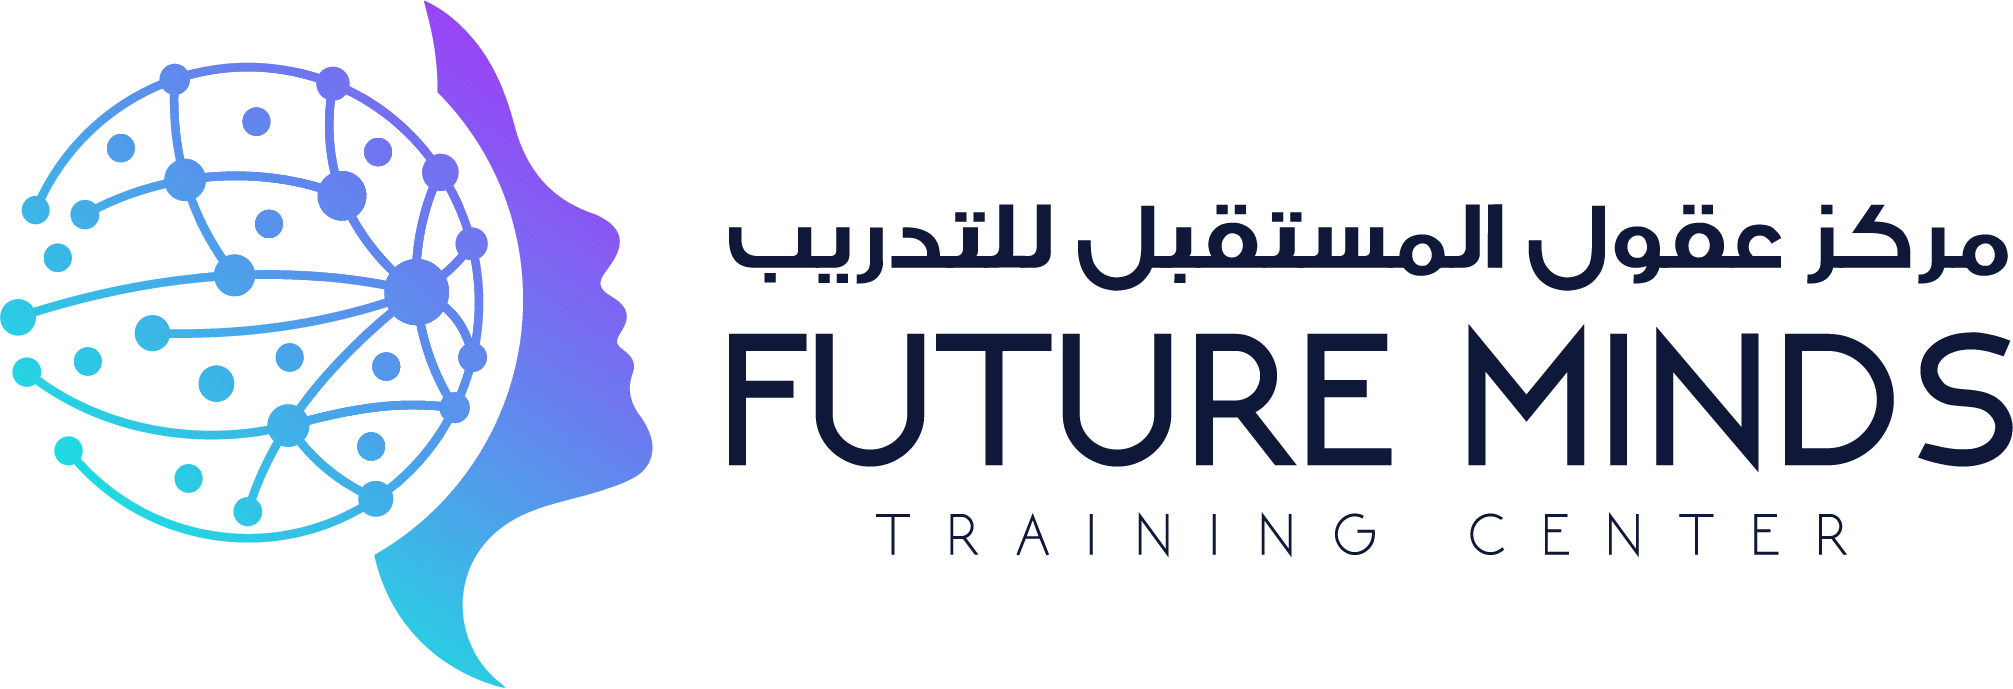 عقول المستقبل للتدريب | Future Minds Training Center